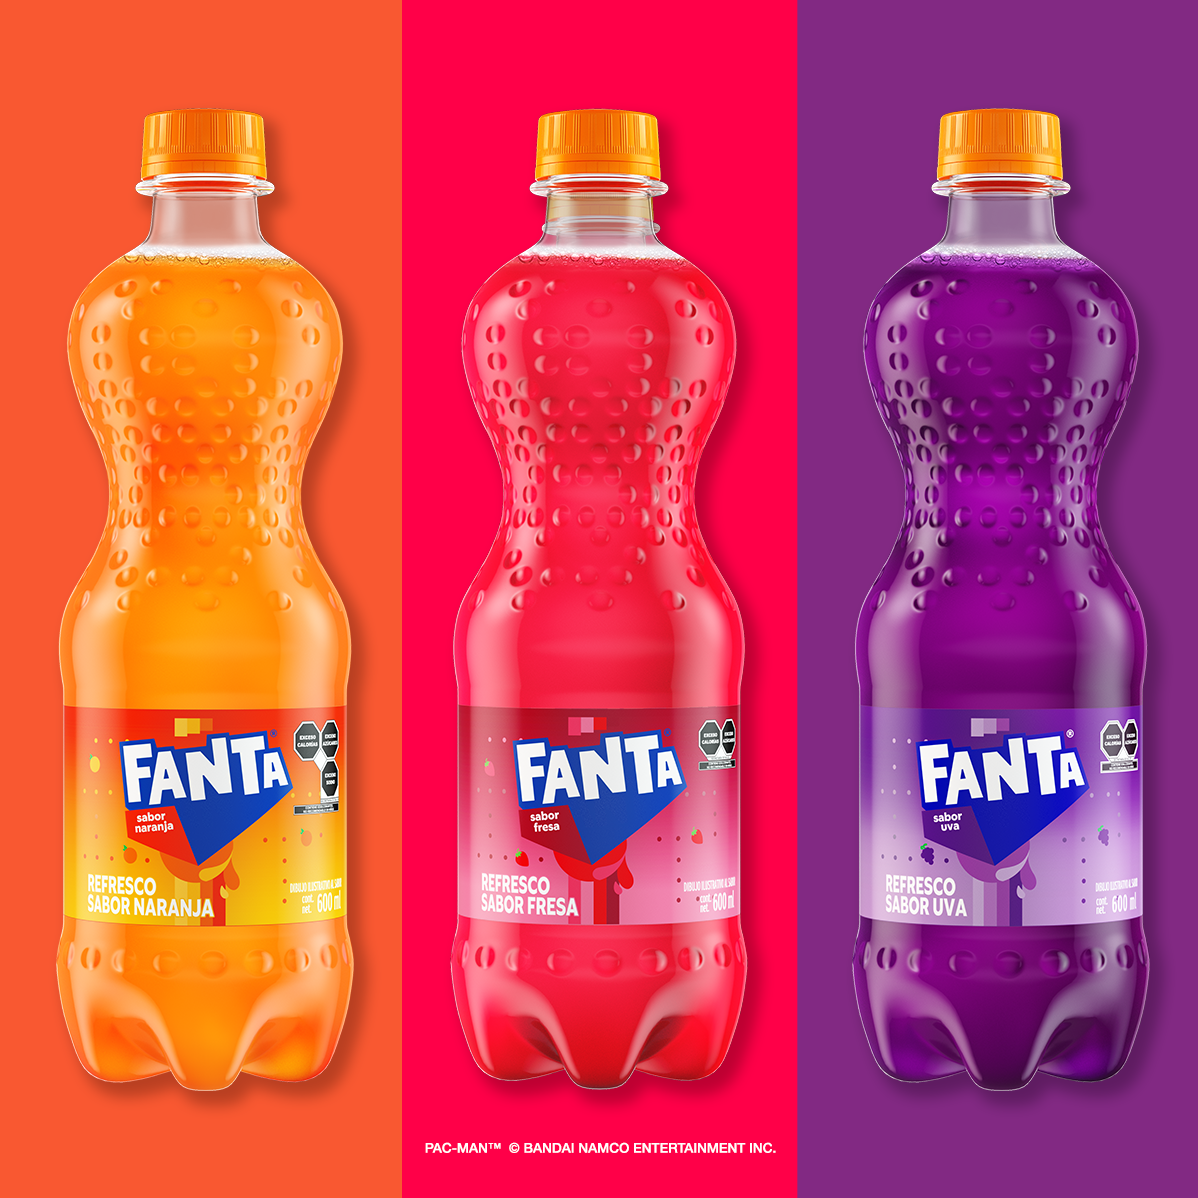 Tres botellas de Fanta naranja en sus tres sabores, naranja, fresa y uva con los fondos de su respectivo color; la de la izquierda sobre fondo naranja, la Fanta de fresa sobre fondo rojo y la de uva sobre fondo violeta.